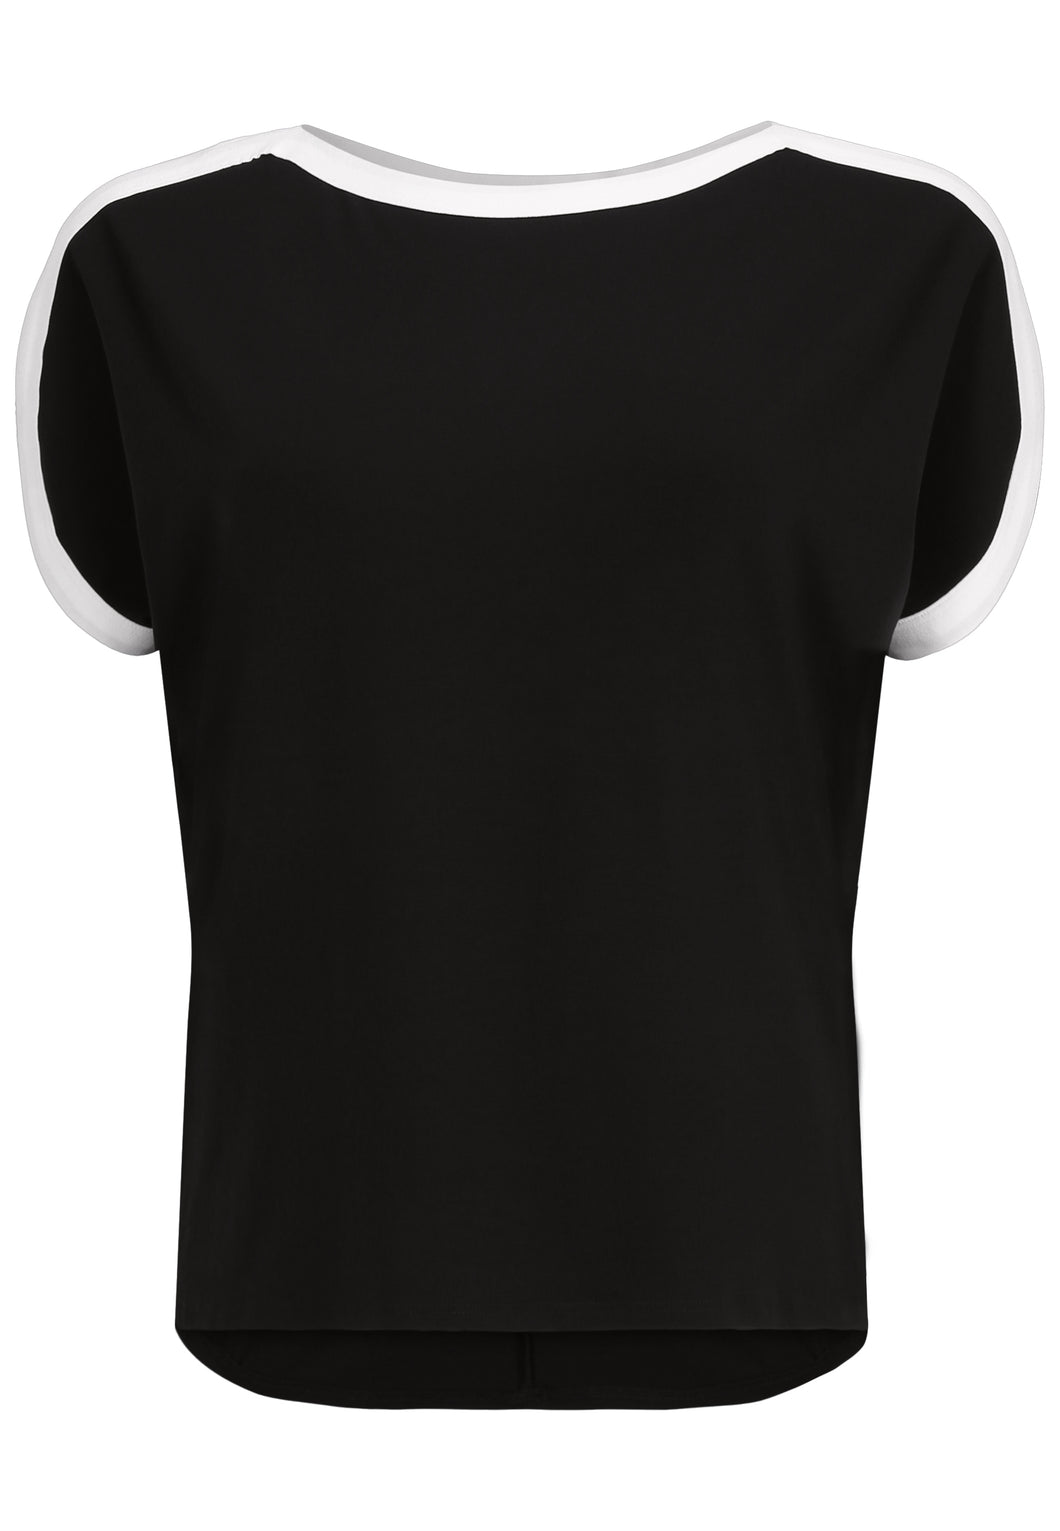 Doris Streich Long-Shirt mit kurzem Arm und Kontrastblenden Gr. 44 - 56